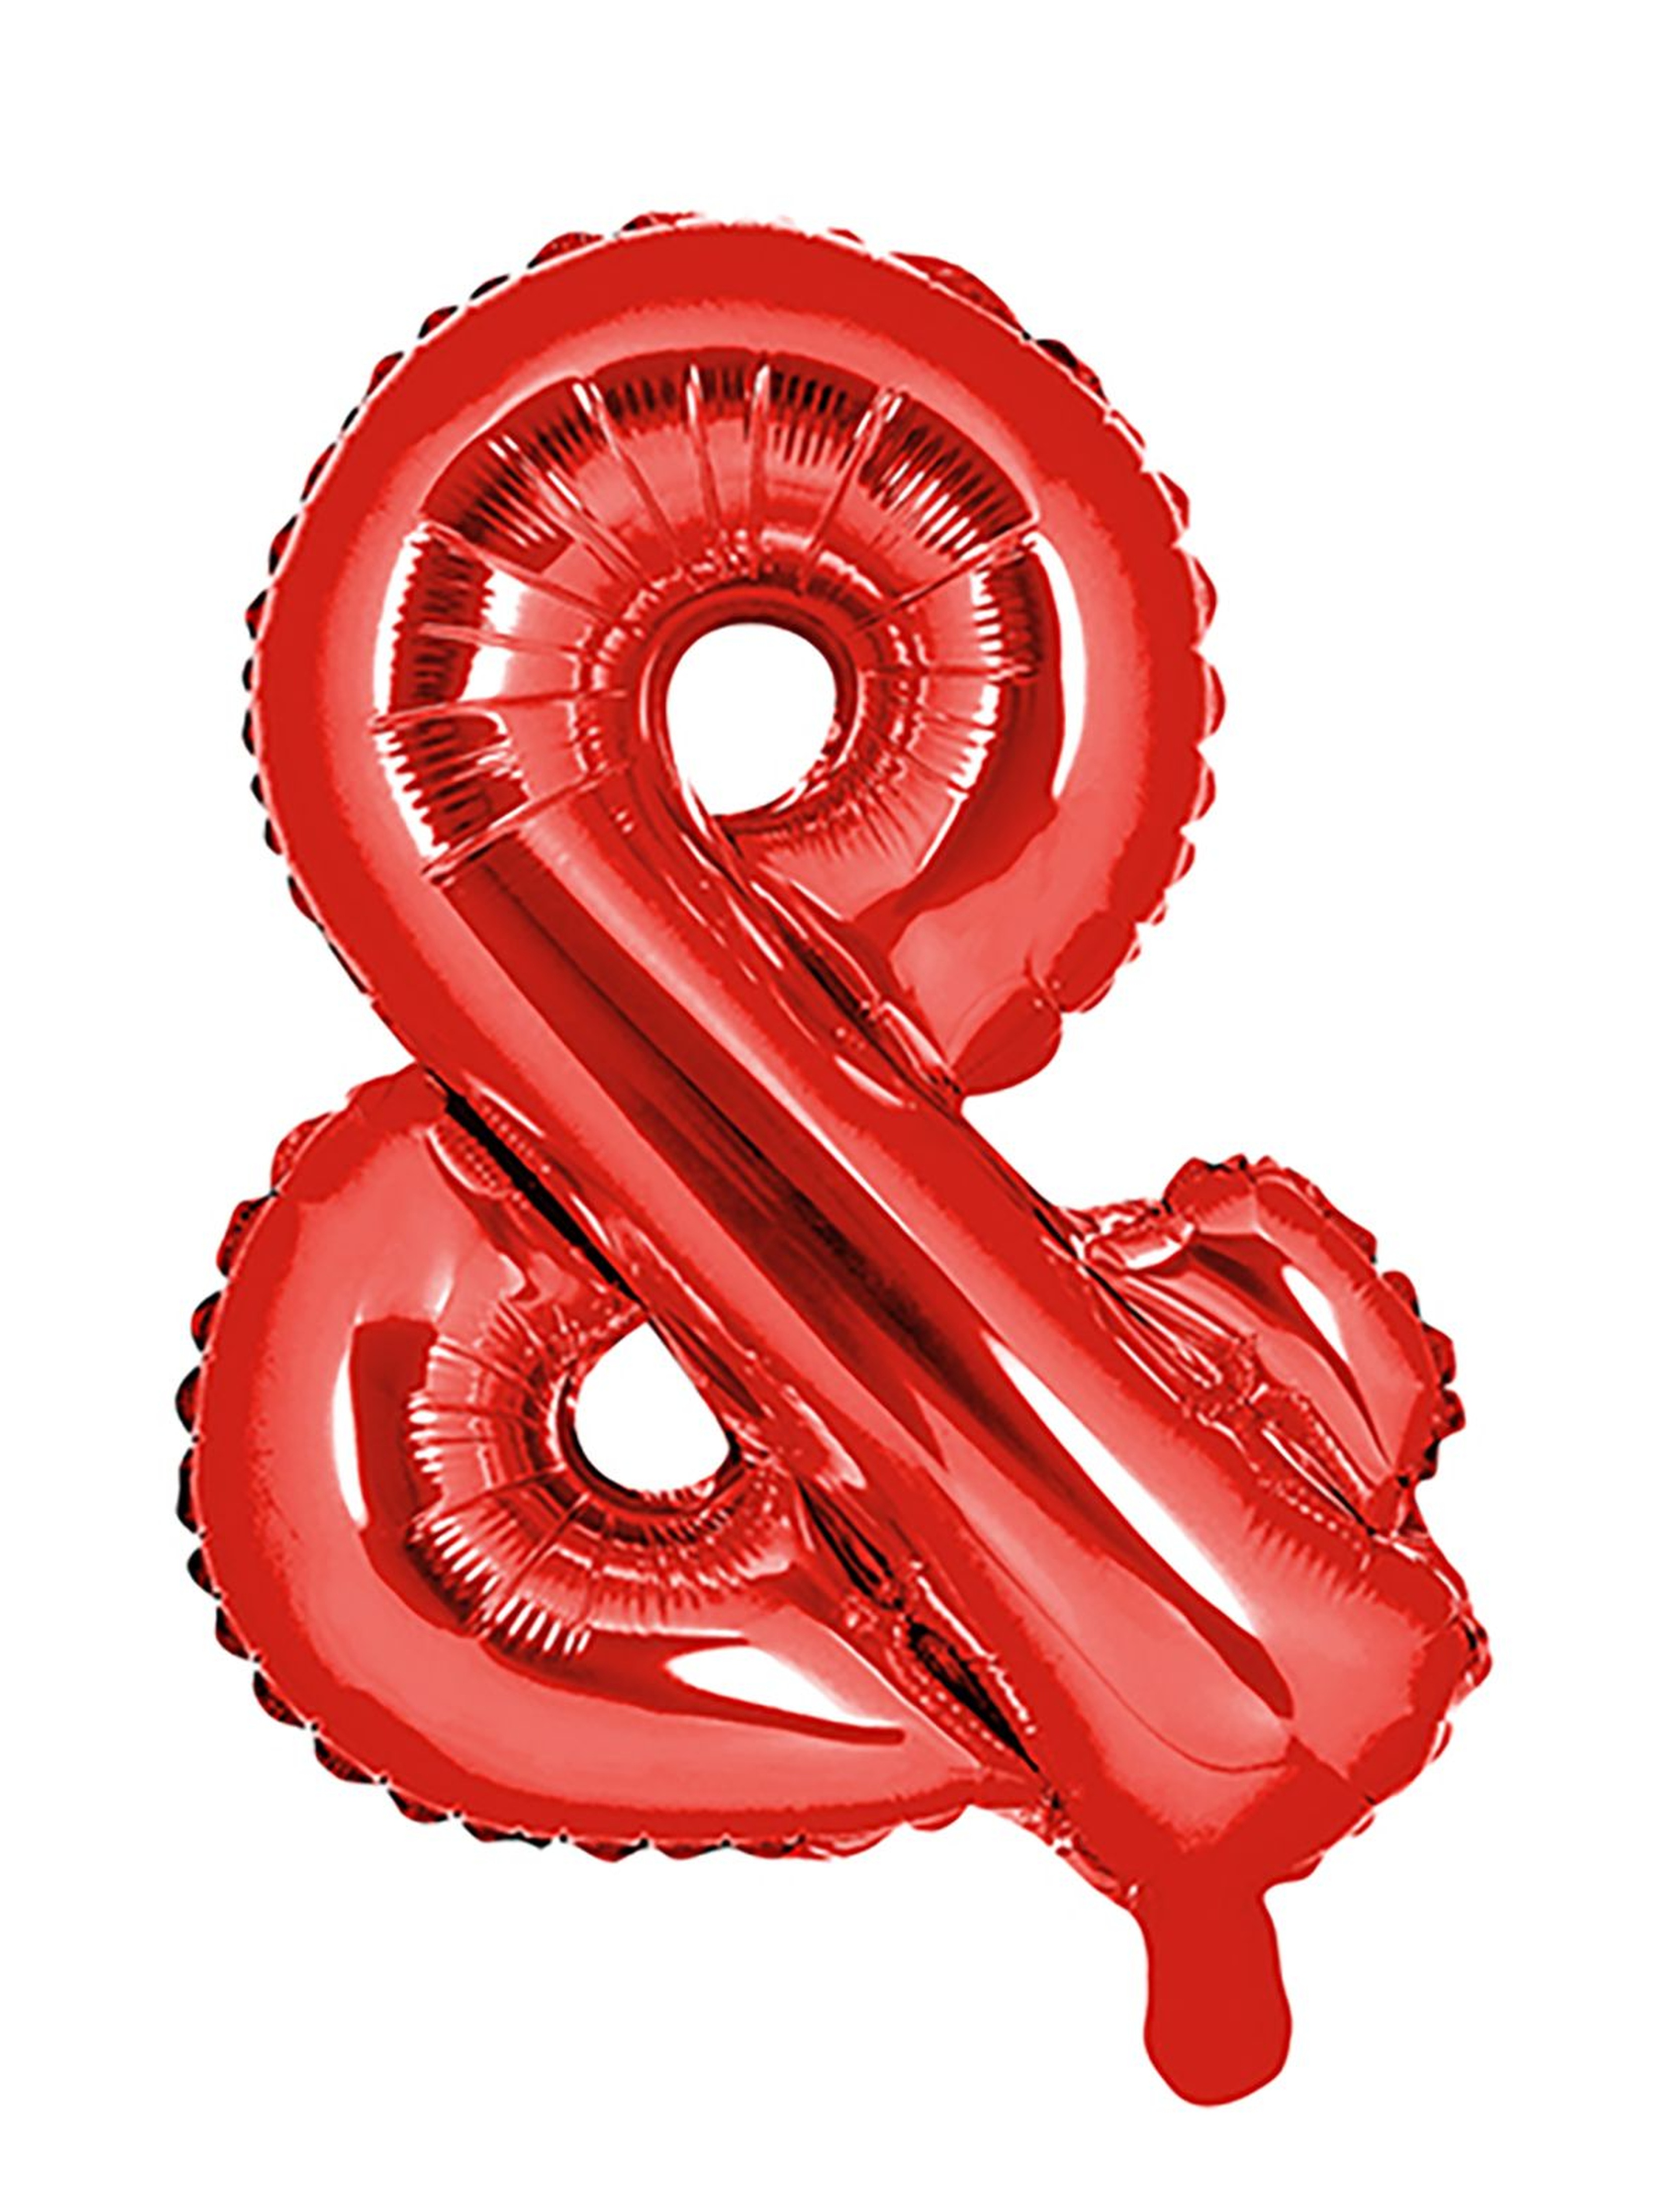 Balon foliowy znak ''&'', 35cm - czerwony